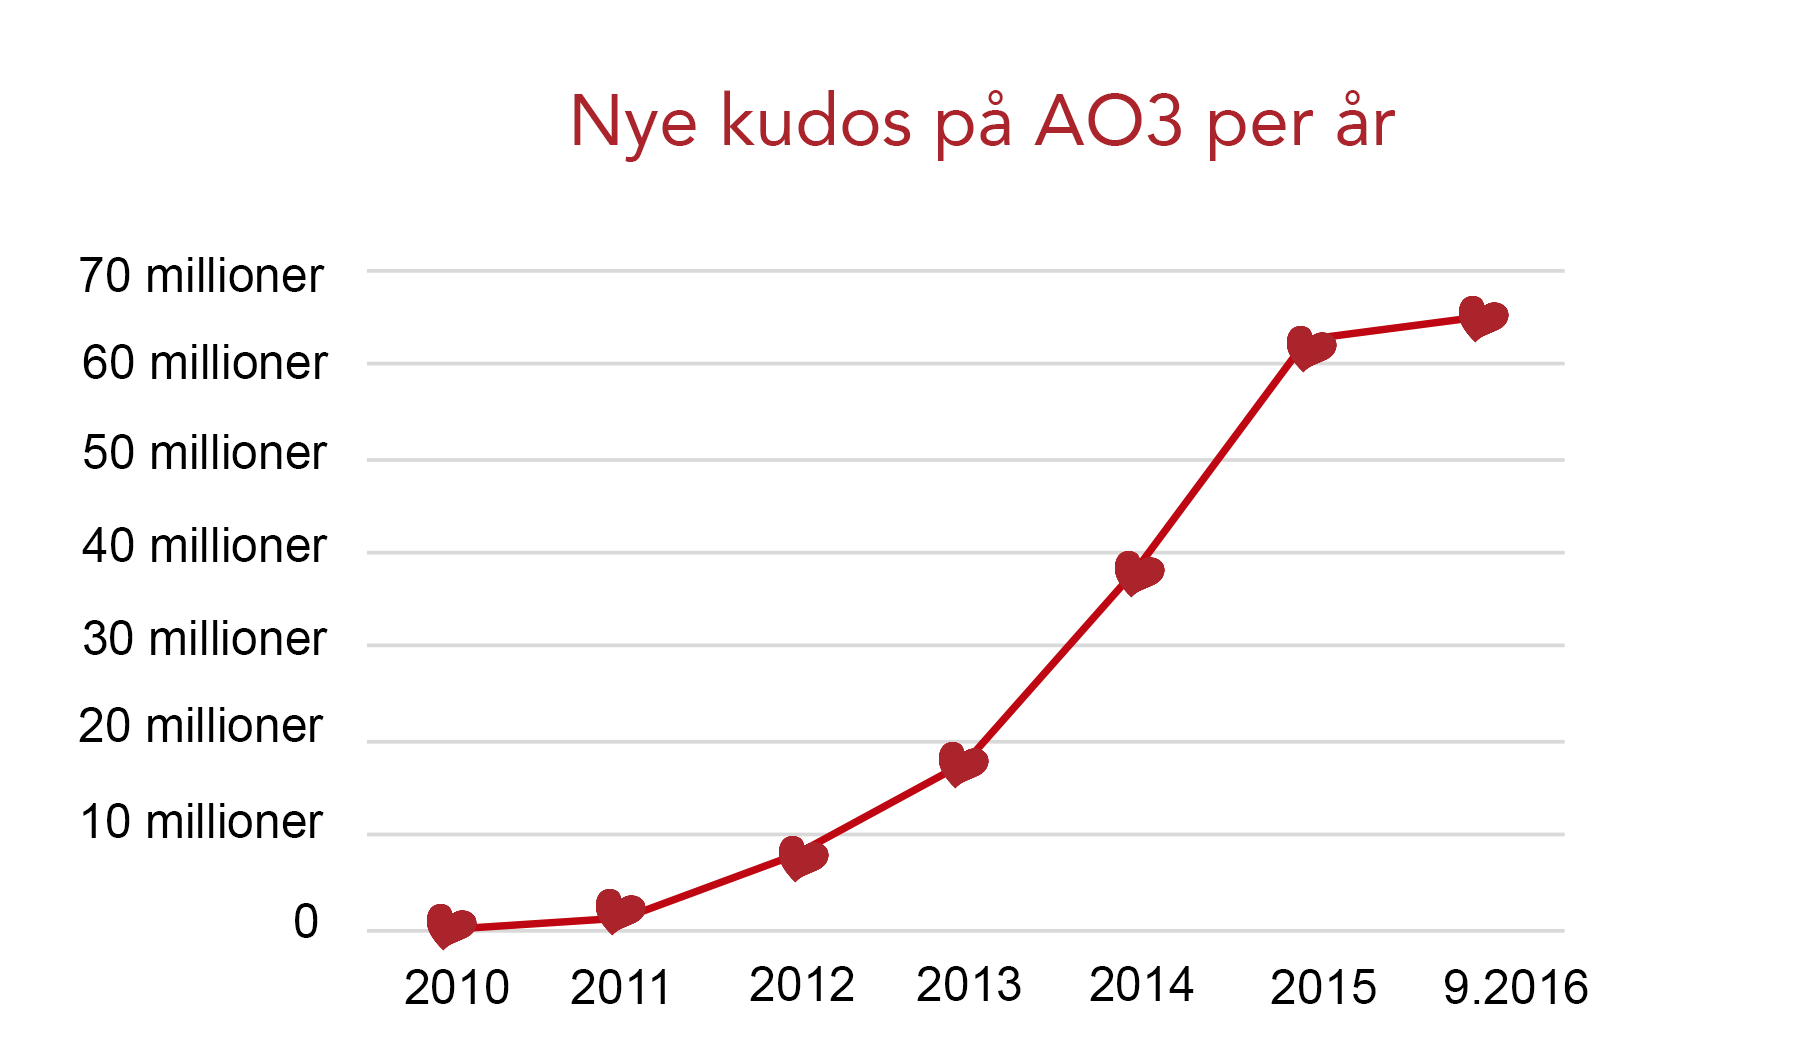 Kudos vekstkurve på AO3, fra null i 2010 til over 60 millioner fra og med september 2016.